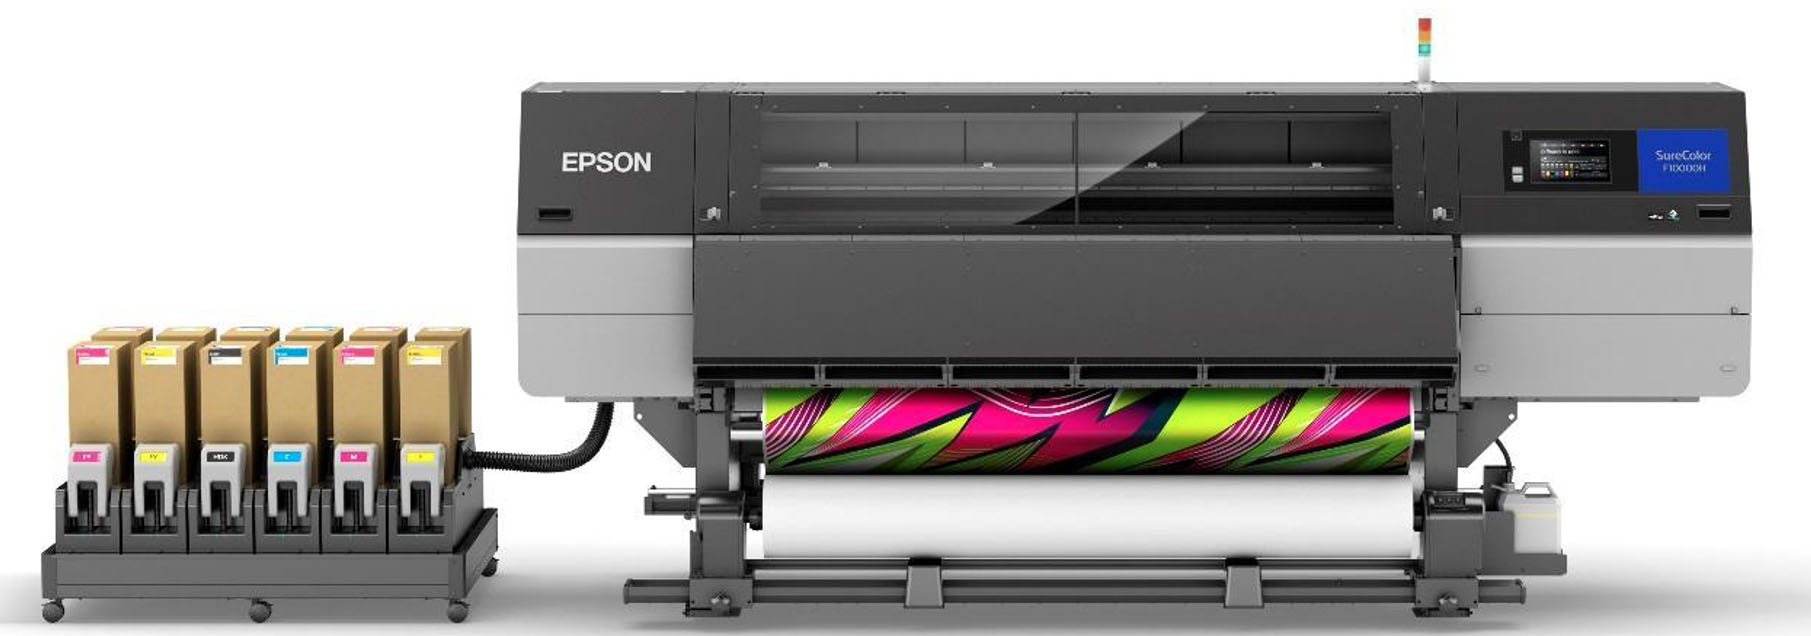 Epson ra mắt máy in chuyển nhiệt thăng hoa công nghiệp khổ 76-inch đầu tiên với giải pháp mực LcLm (Light Cyan, Light Magenta) và huỳnh quang